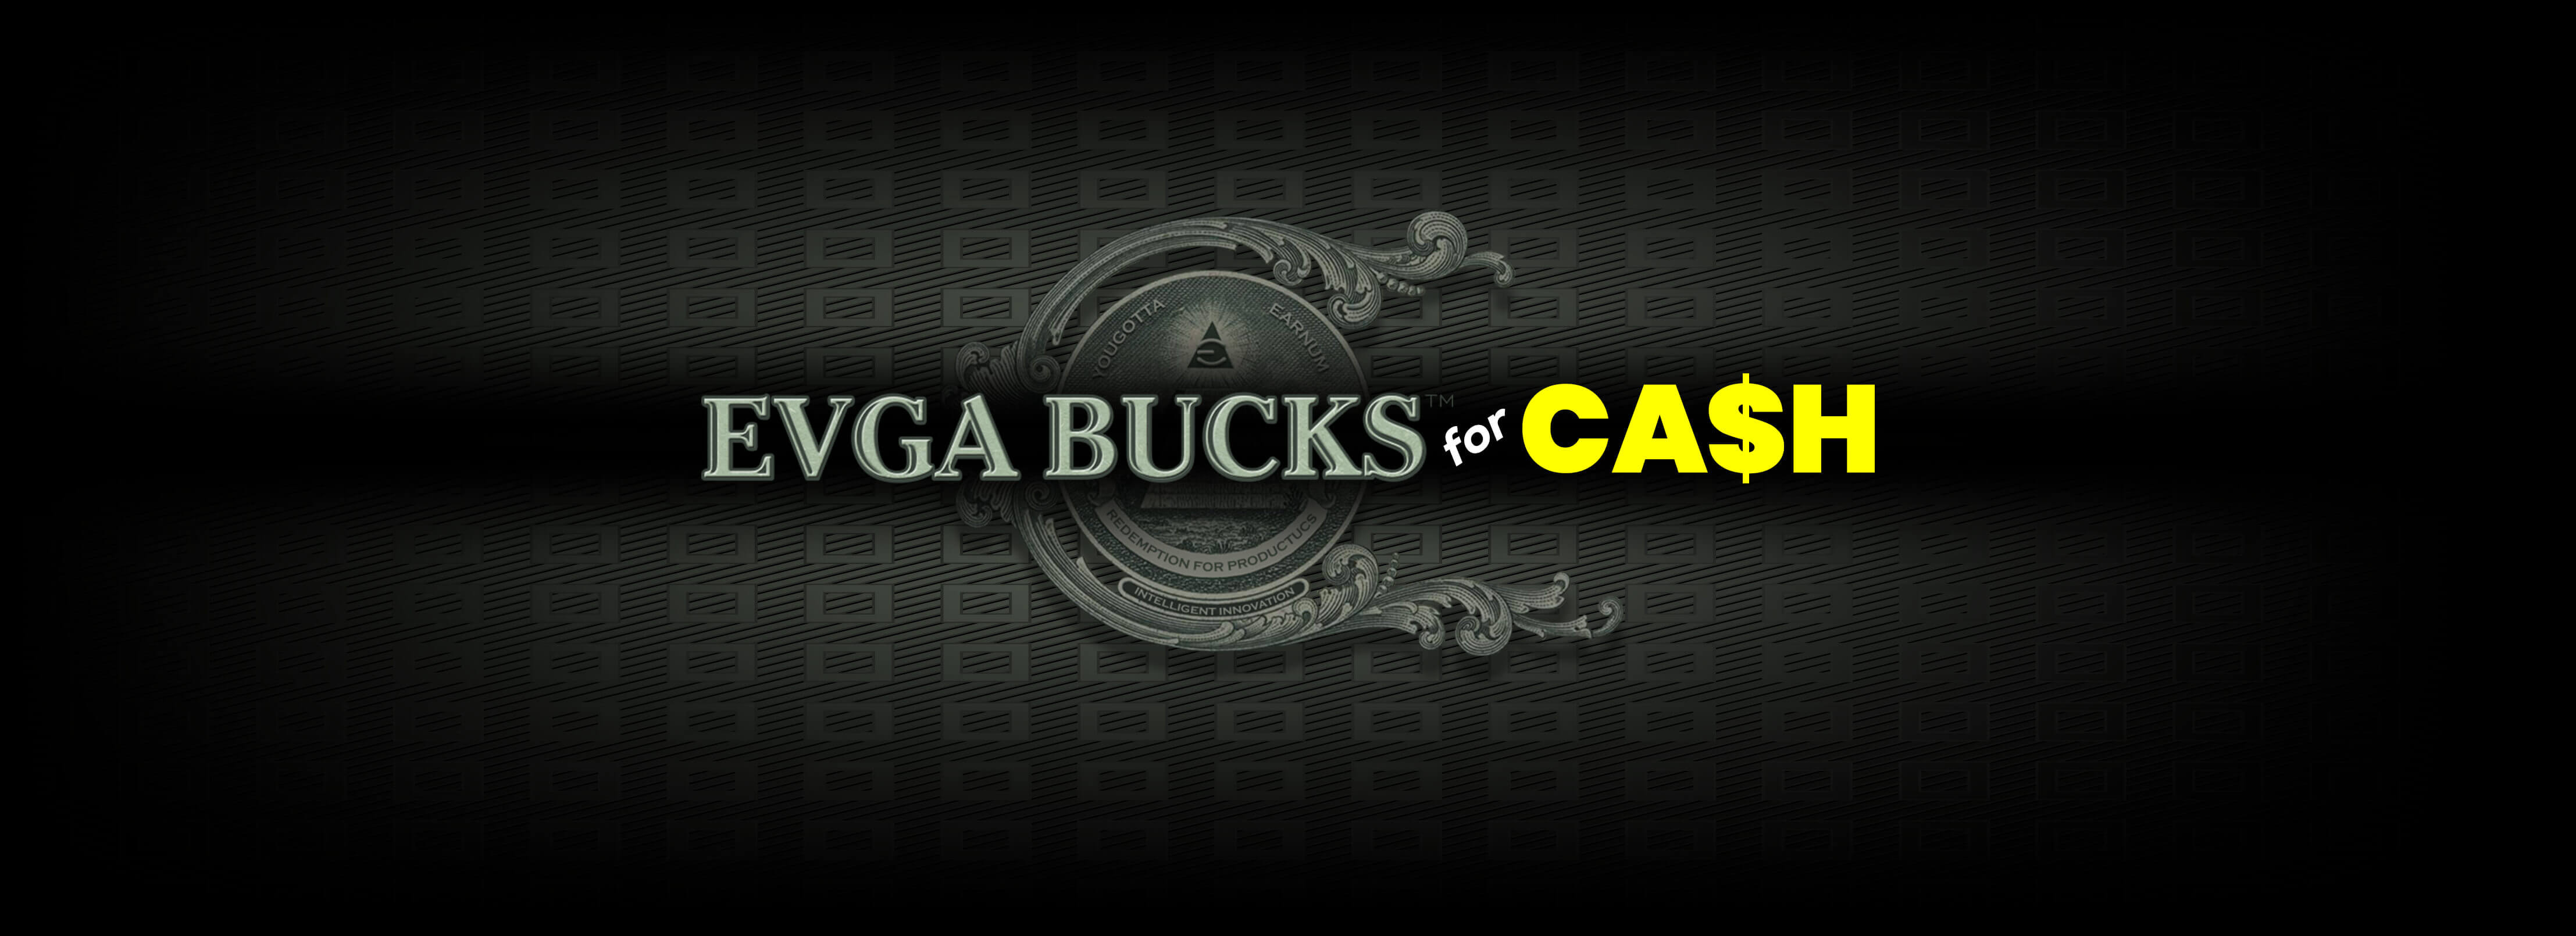 EVGA BUCKS FOR CASH PROGRAM!